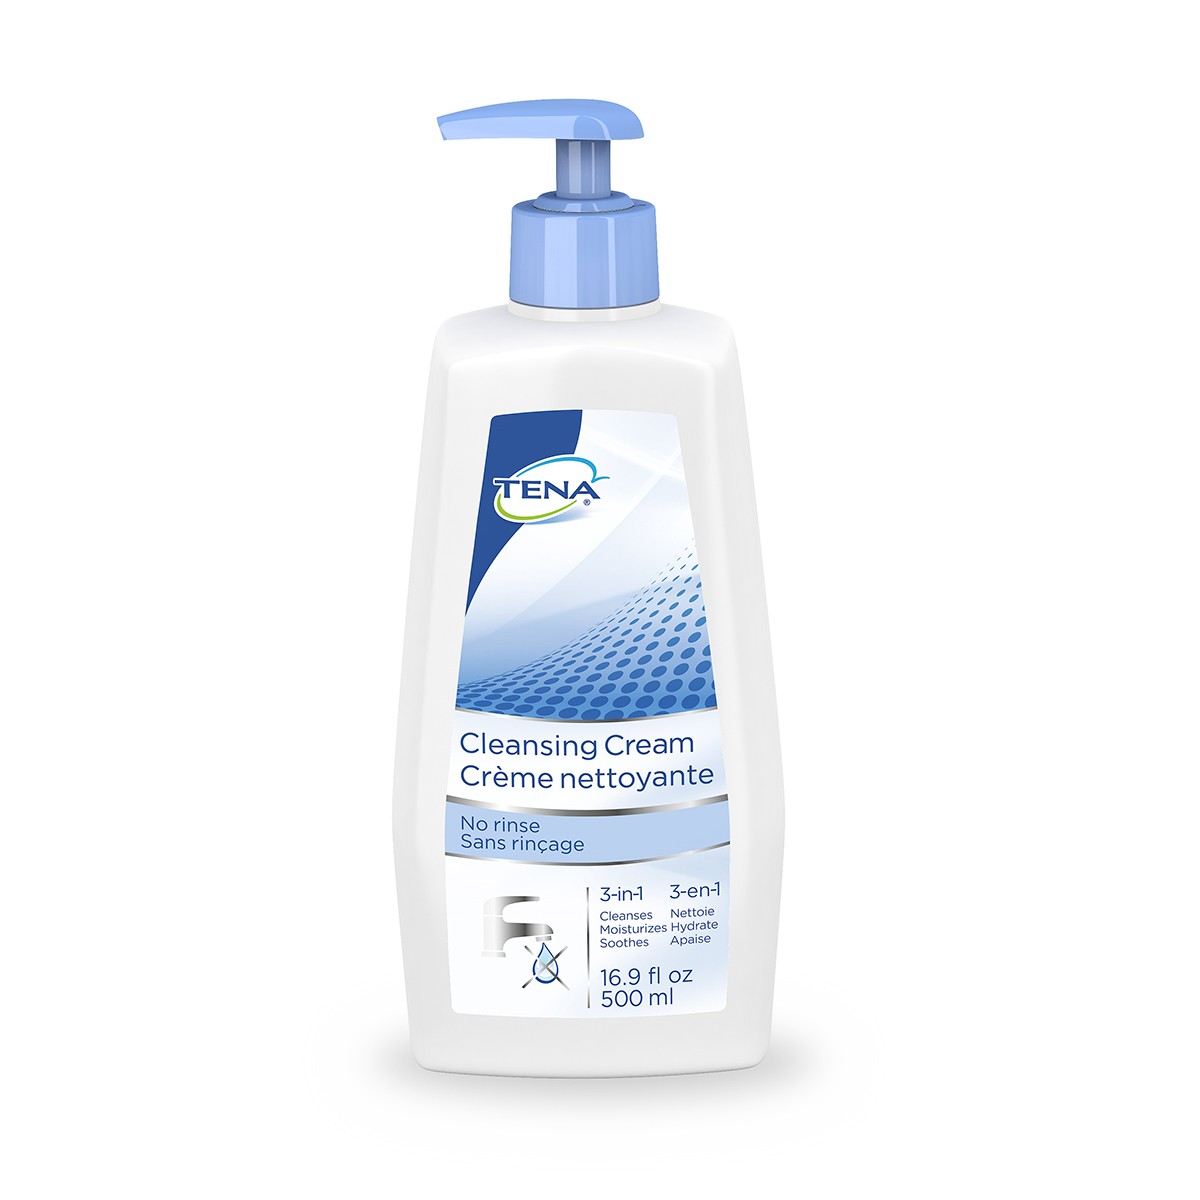 TENA® Cleansing Cream, 500ml